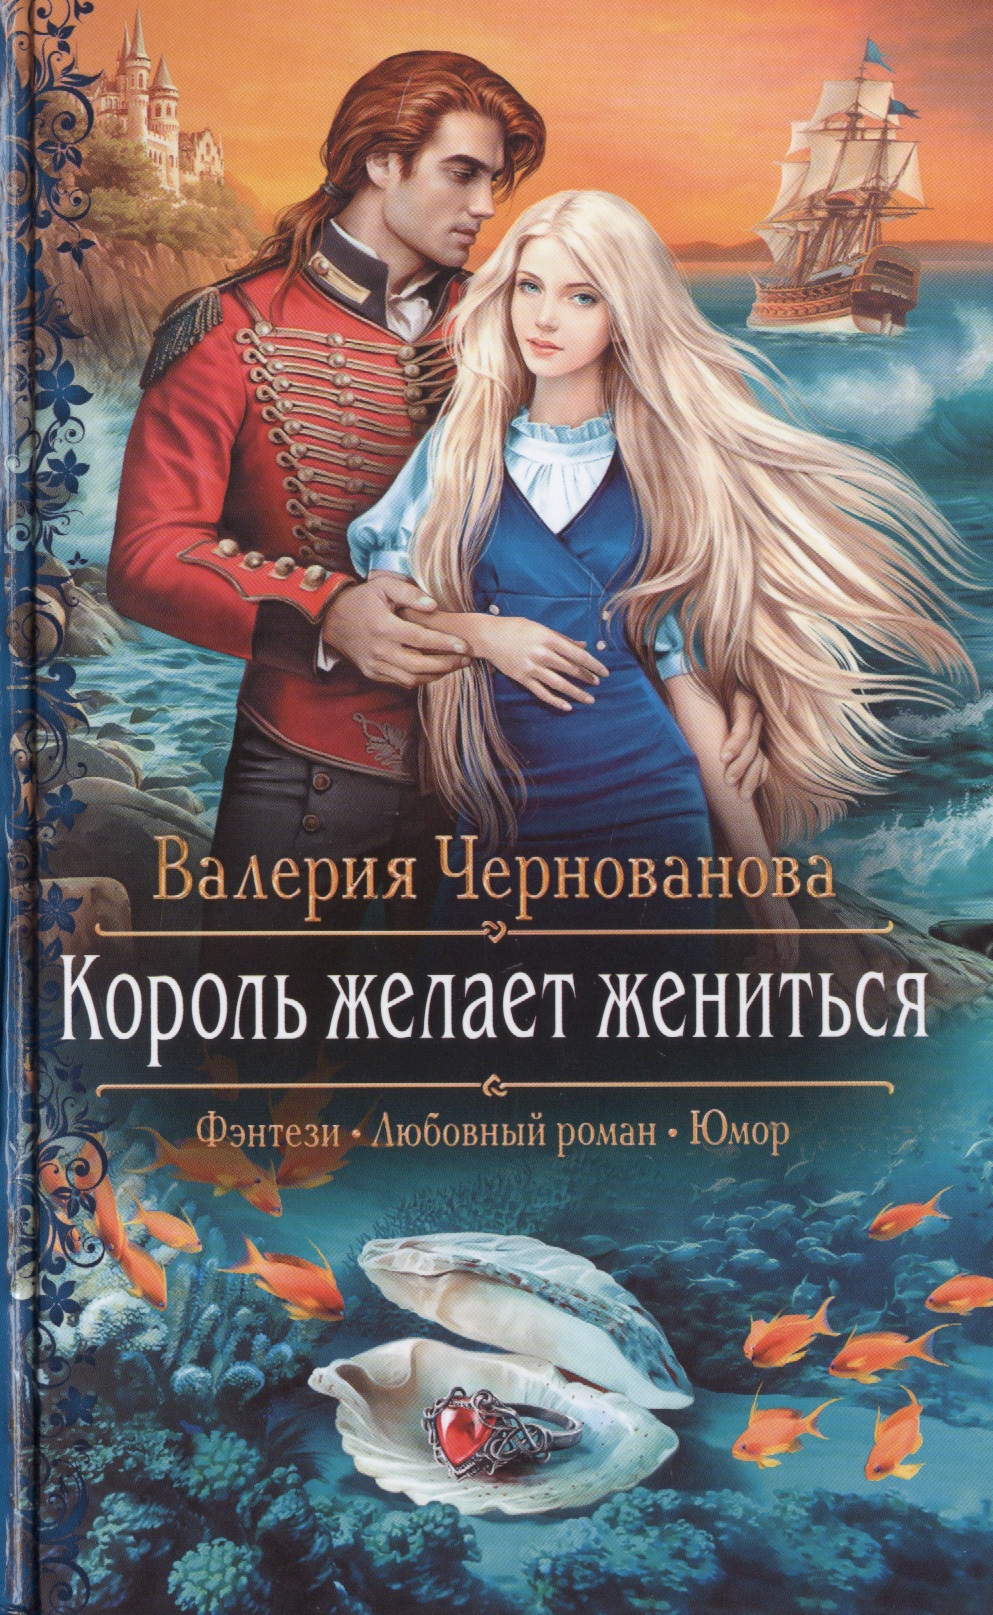 Любовные романы про юмор. Король желает жениться Чернованова. Обложки книг фэнтези. Любовное фэнтези.